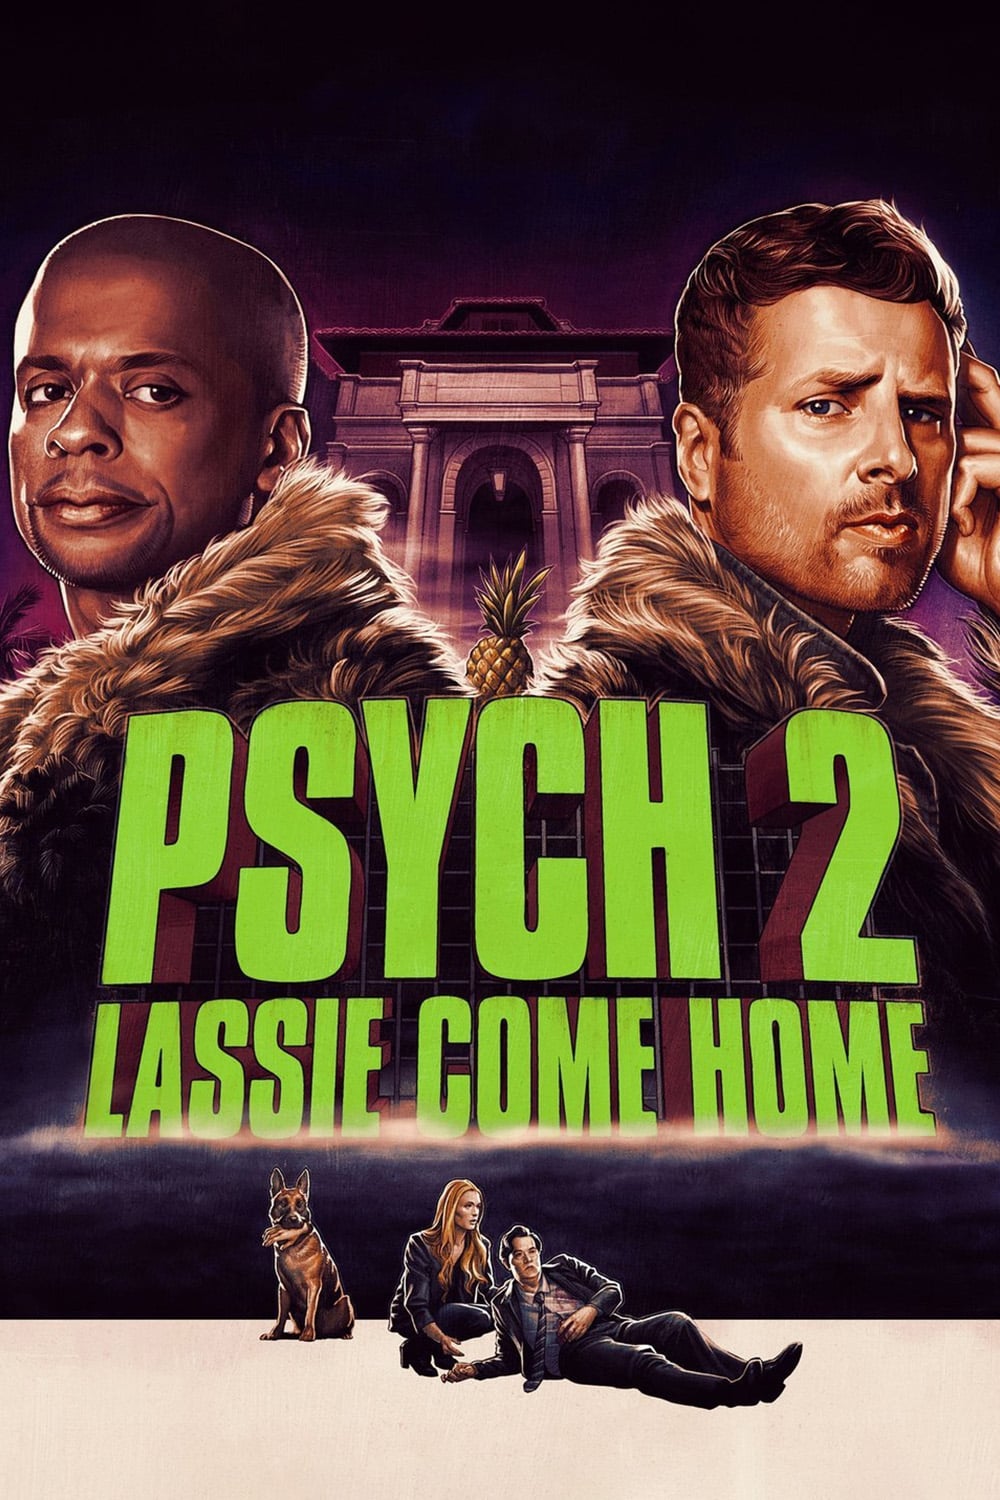 Psych 2: Lassie Come Home film